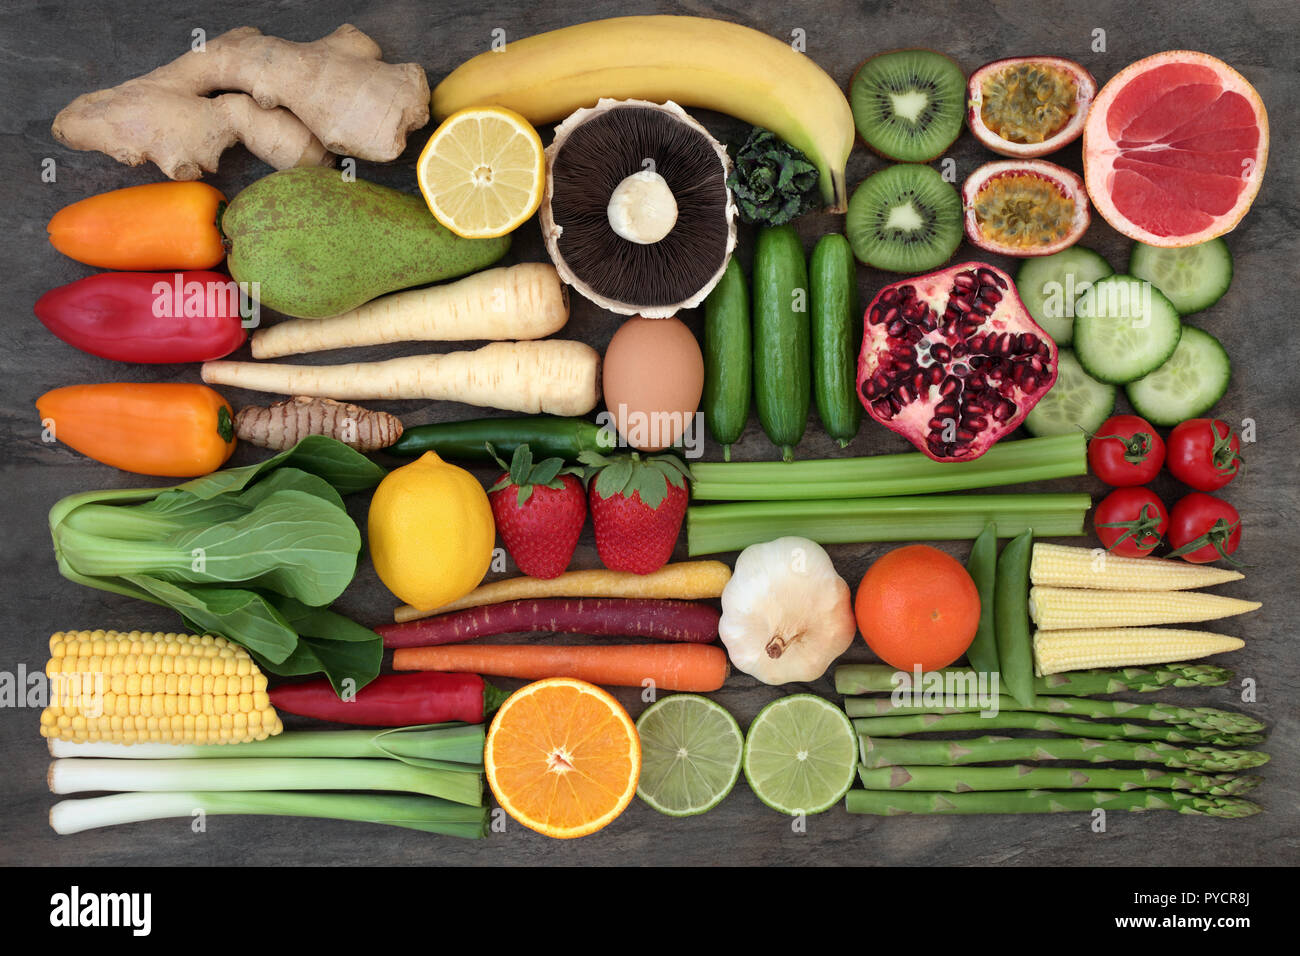 Gesund super Essen auswahl guter Gesundheit mit frischem Obst und Gemüse auf Marmor zu fördern. Lebensmittel, die einen hohen Gehalt an Antioxidantien und Ballaststoffe Stockfoto